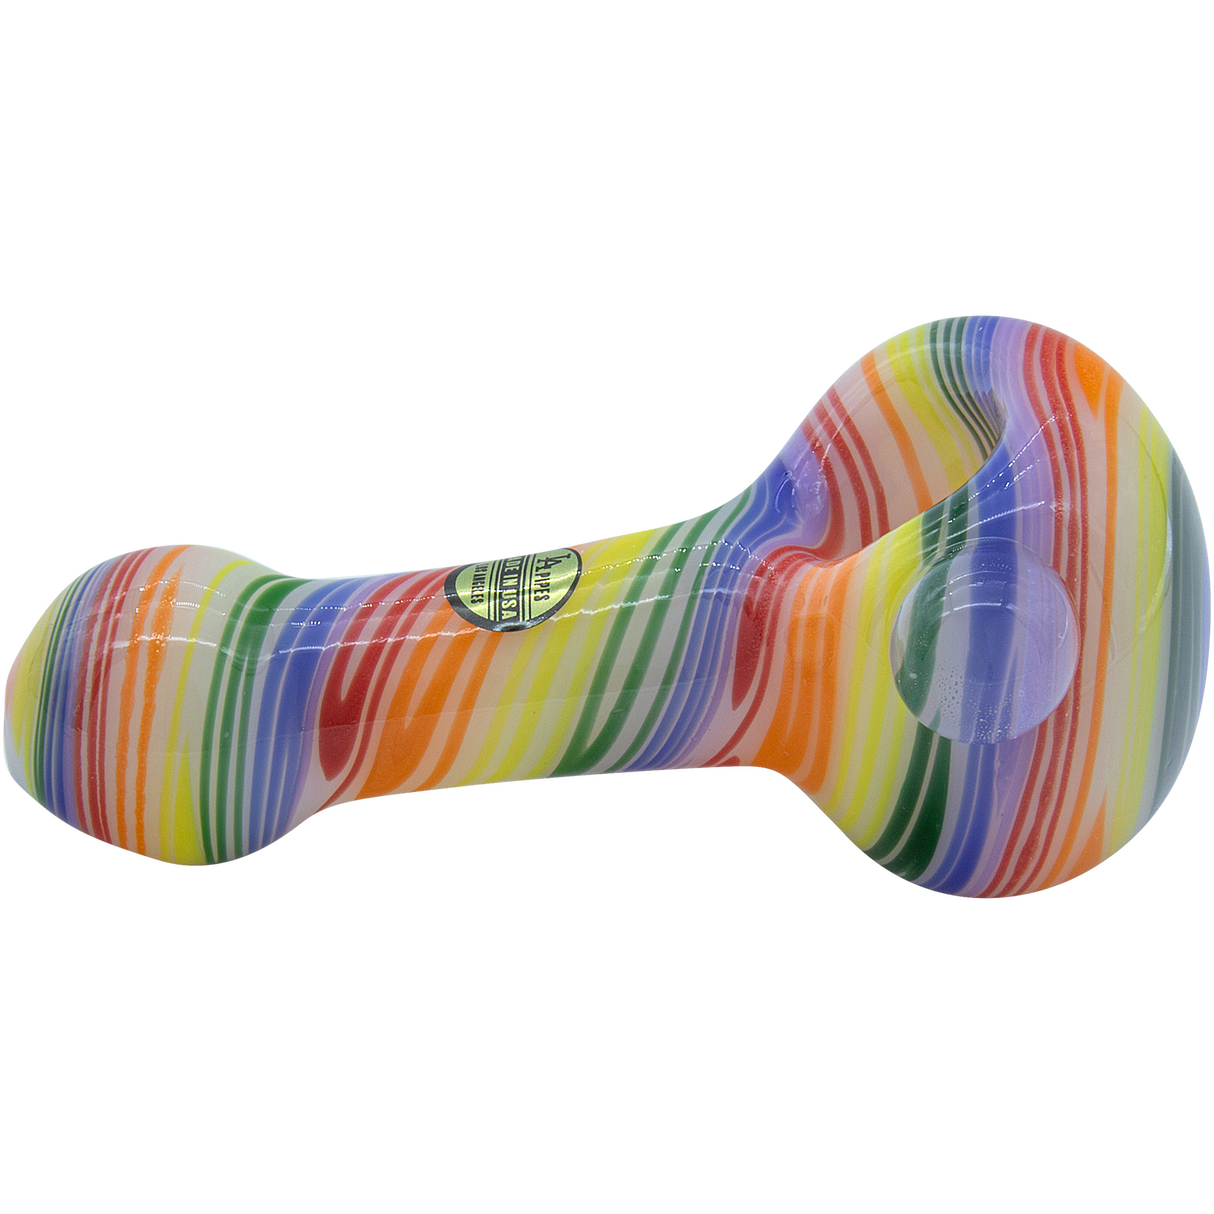 LA Pipes Rainbow Spirals Glass Pipe, 4.5" Spoon Design, Borosilicate, Side View